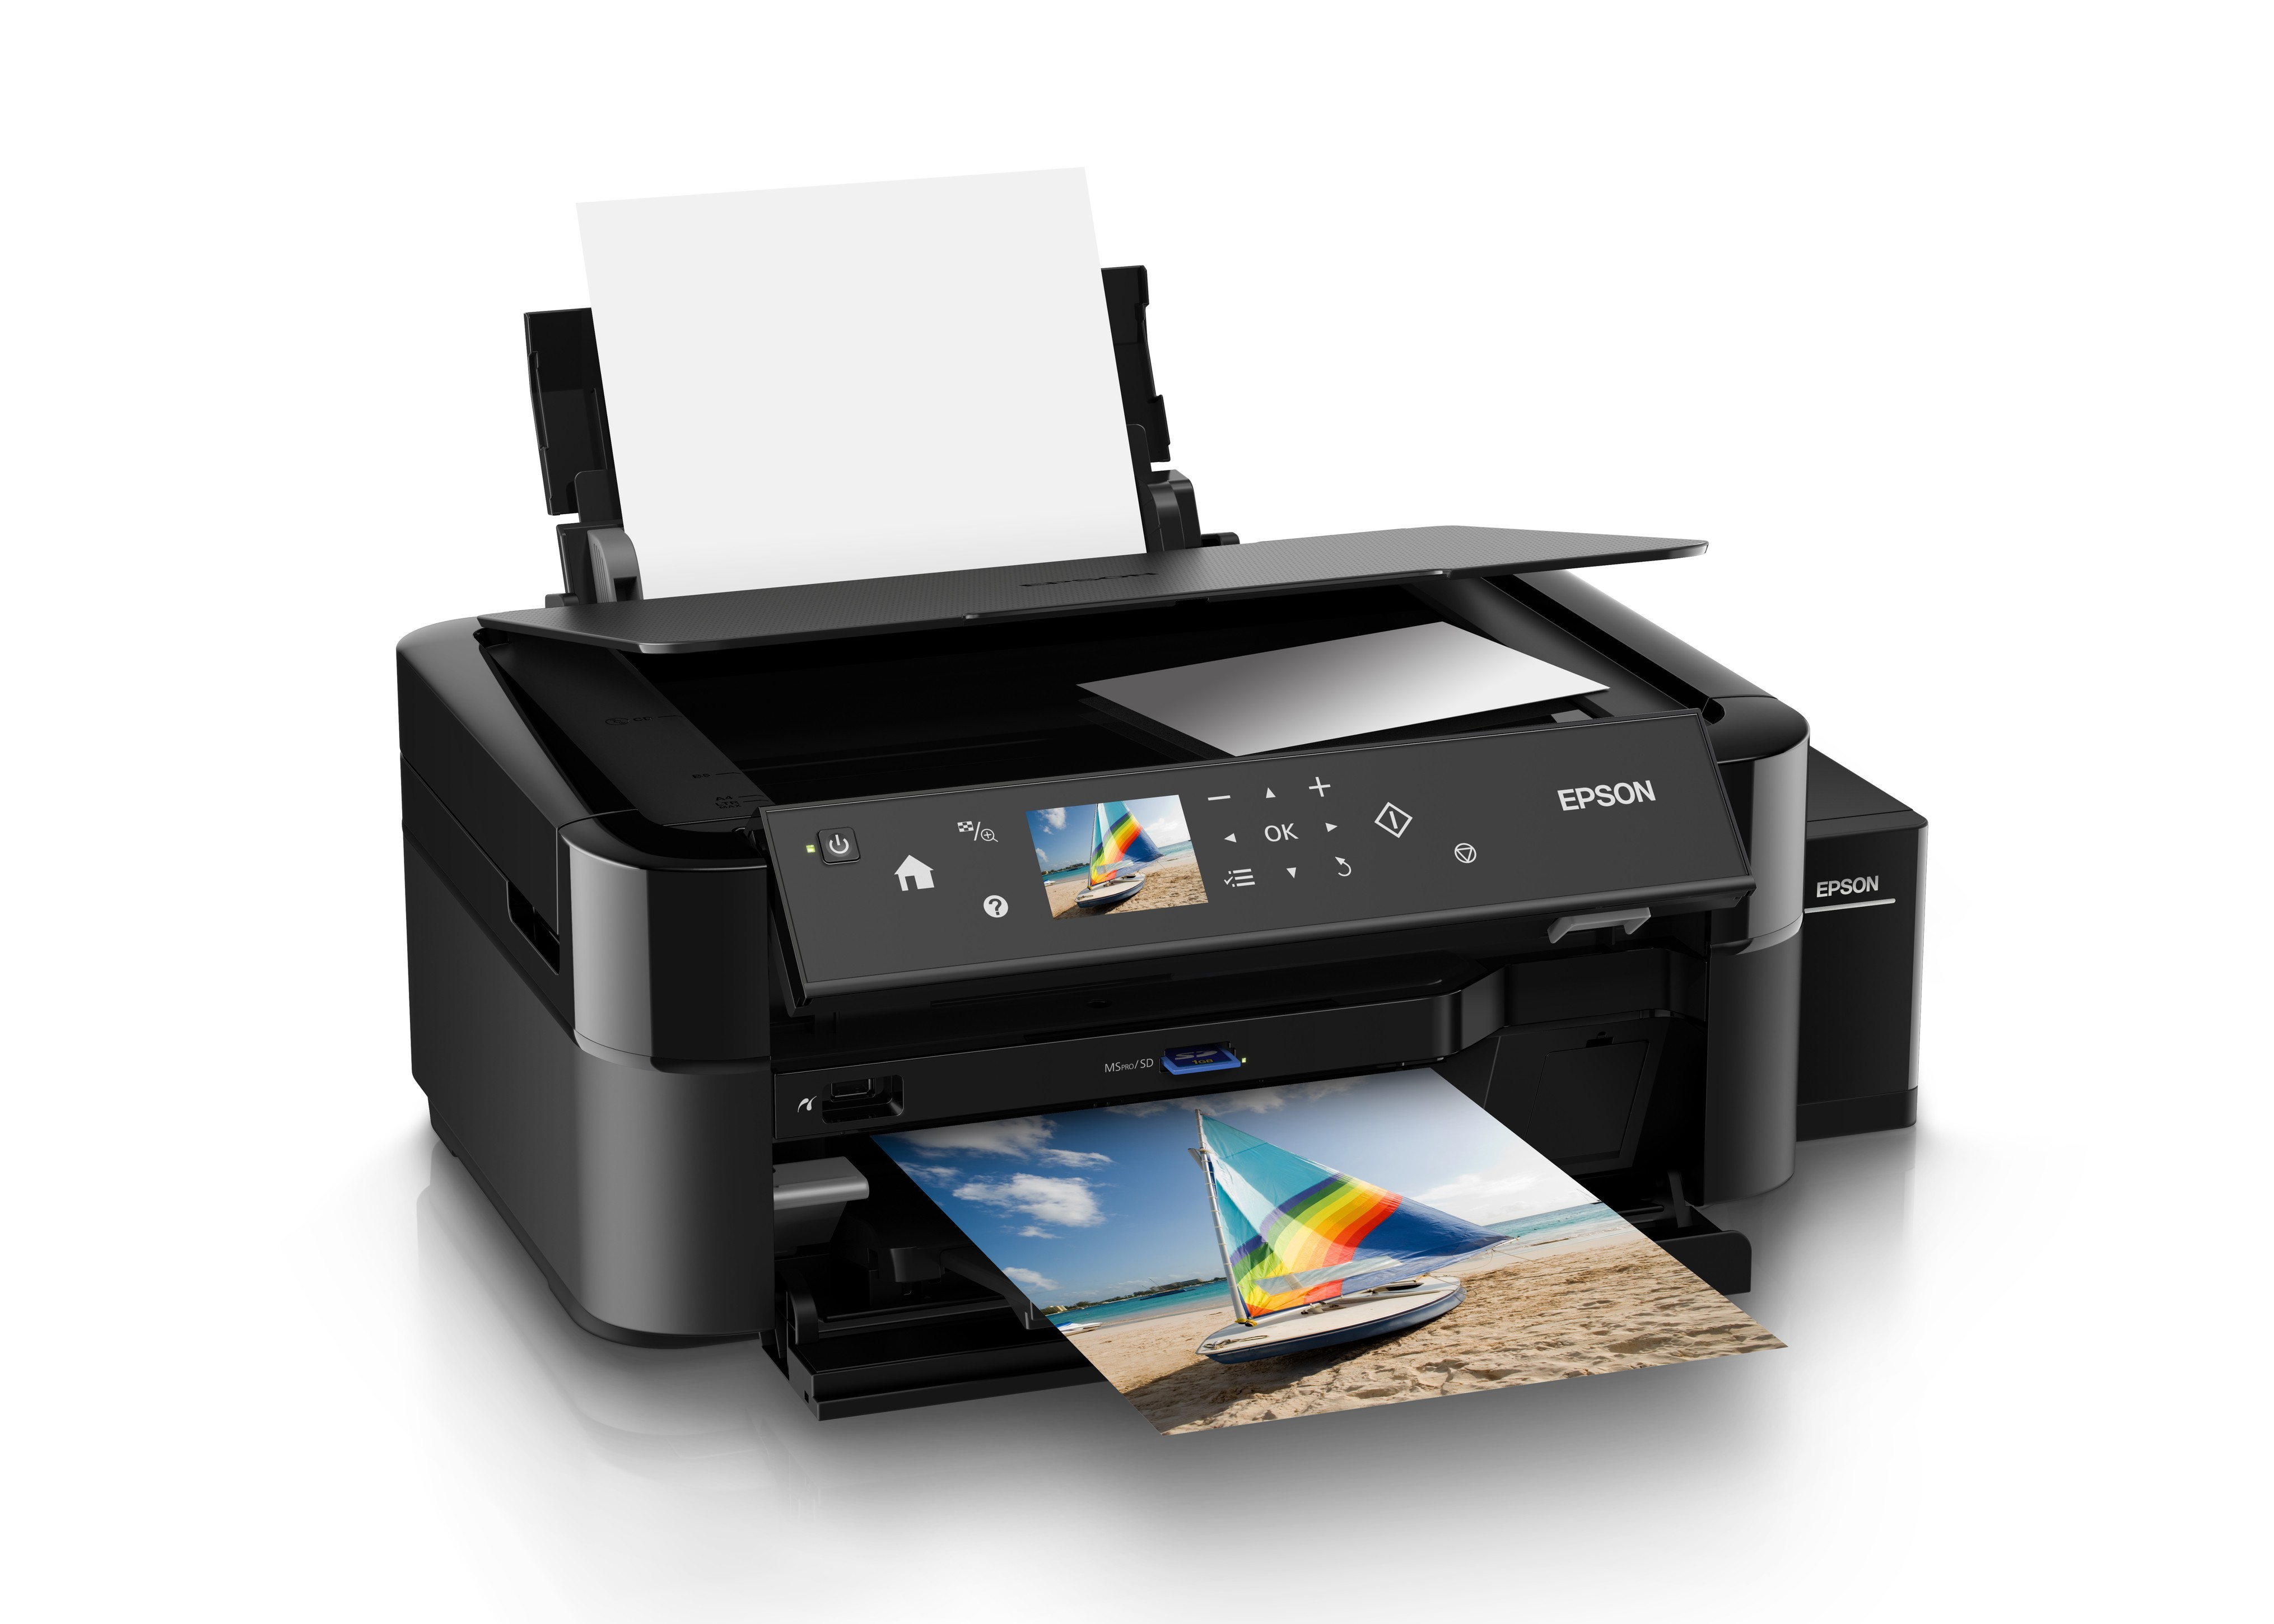 Принтер для распечатки документов. C11ce31402 МФУ Epson l850. Принтер Epson l850. Принтер Эпсон 850. МФУ струйный Epson l850.